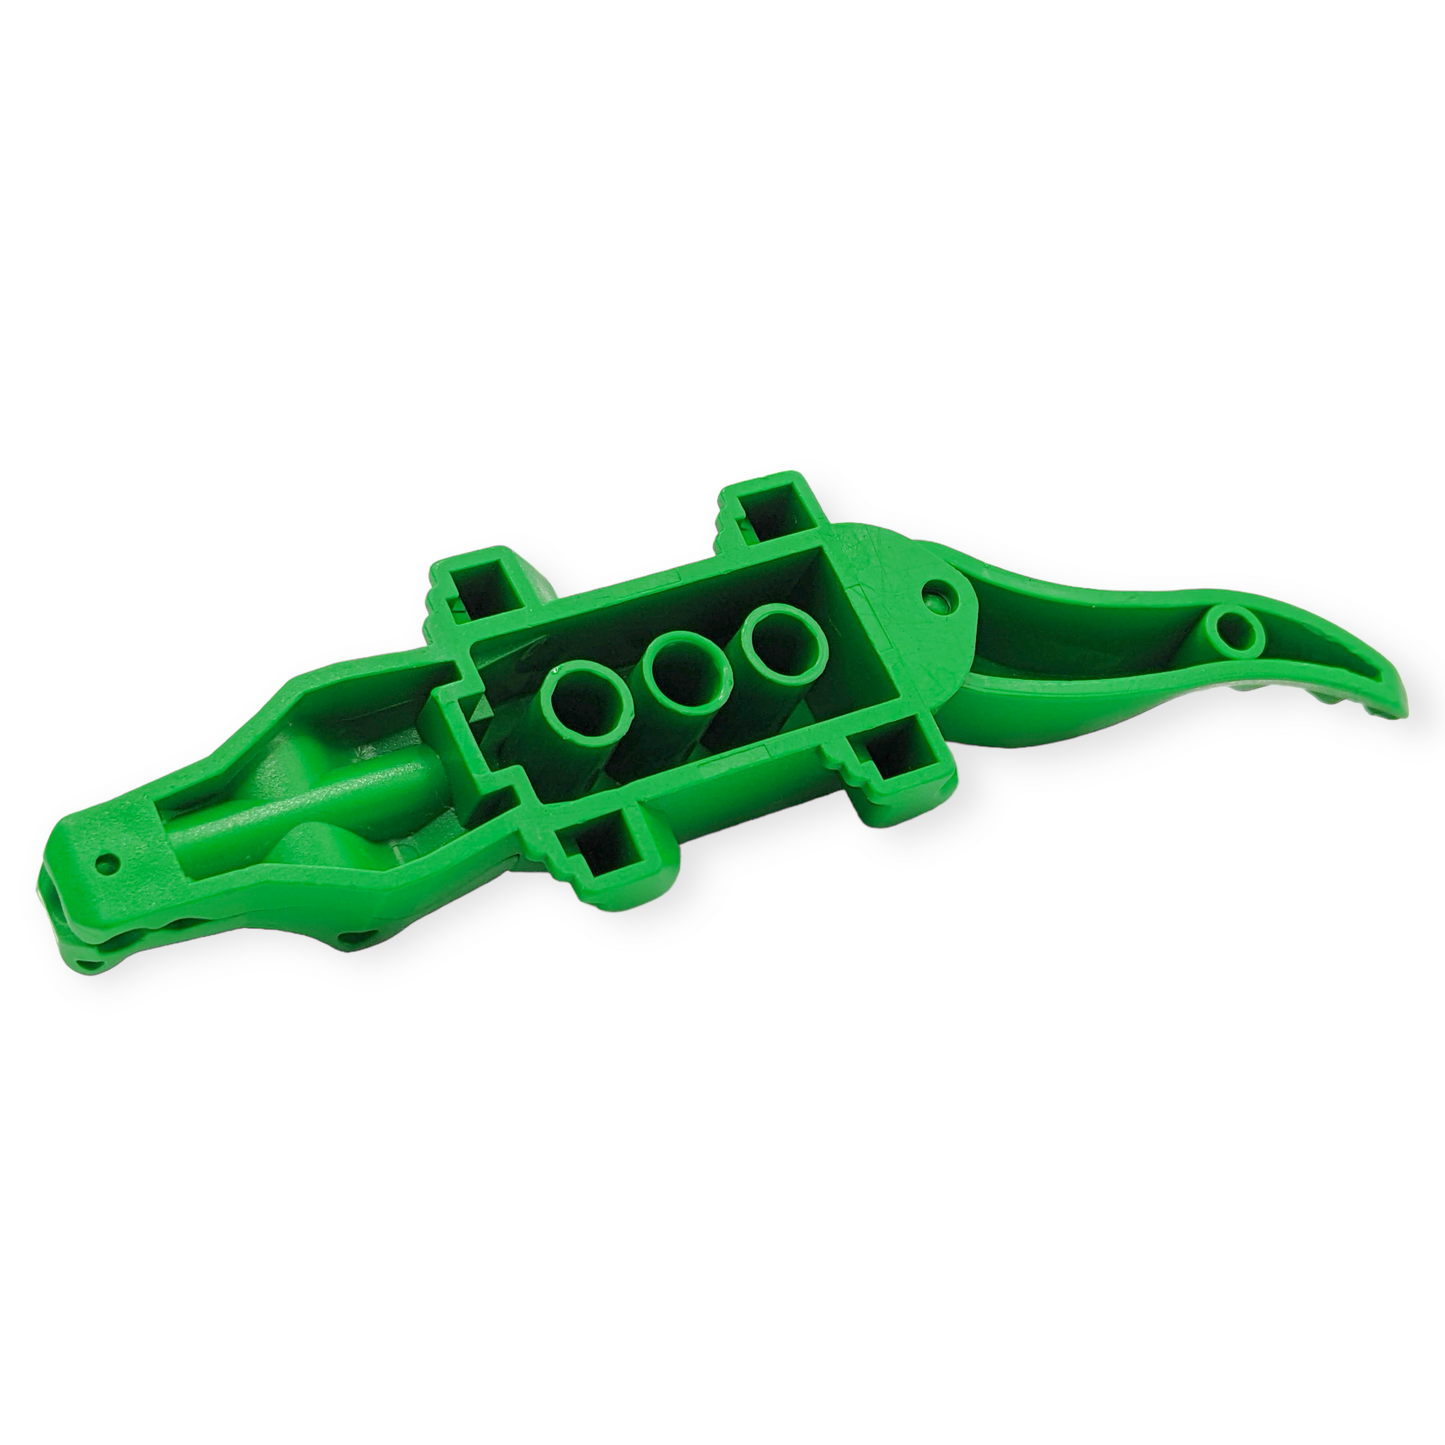 LEGO Alligator / Crocodile Green